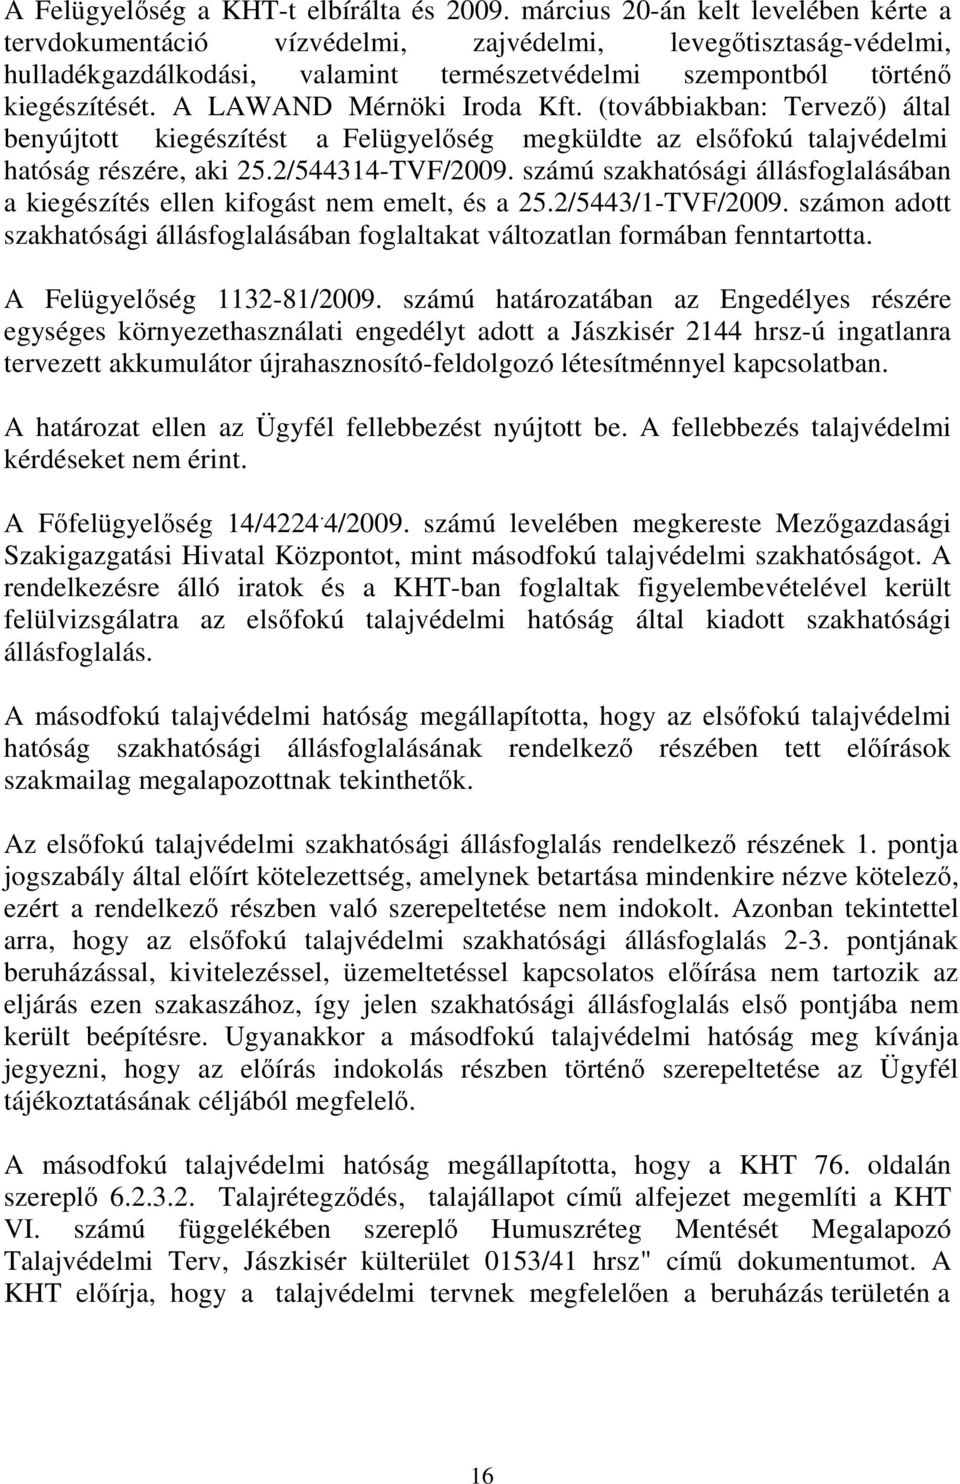 A LAWAND Mérnöki Iroda Kft. (továbbiakban: Tervezı) által benyújtott kiegészítést a Felügyelıség megküldte az elsıfokú talajvédelmi hatóság részére, aki 25.2/544314-TVF/2009.